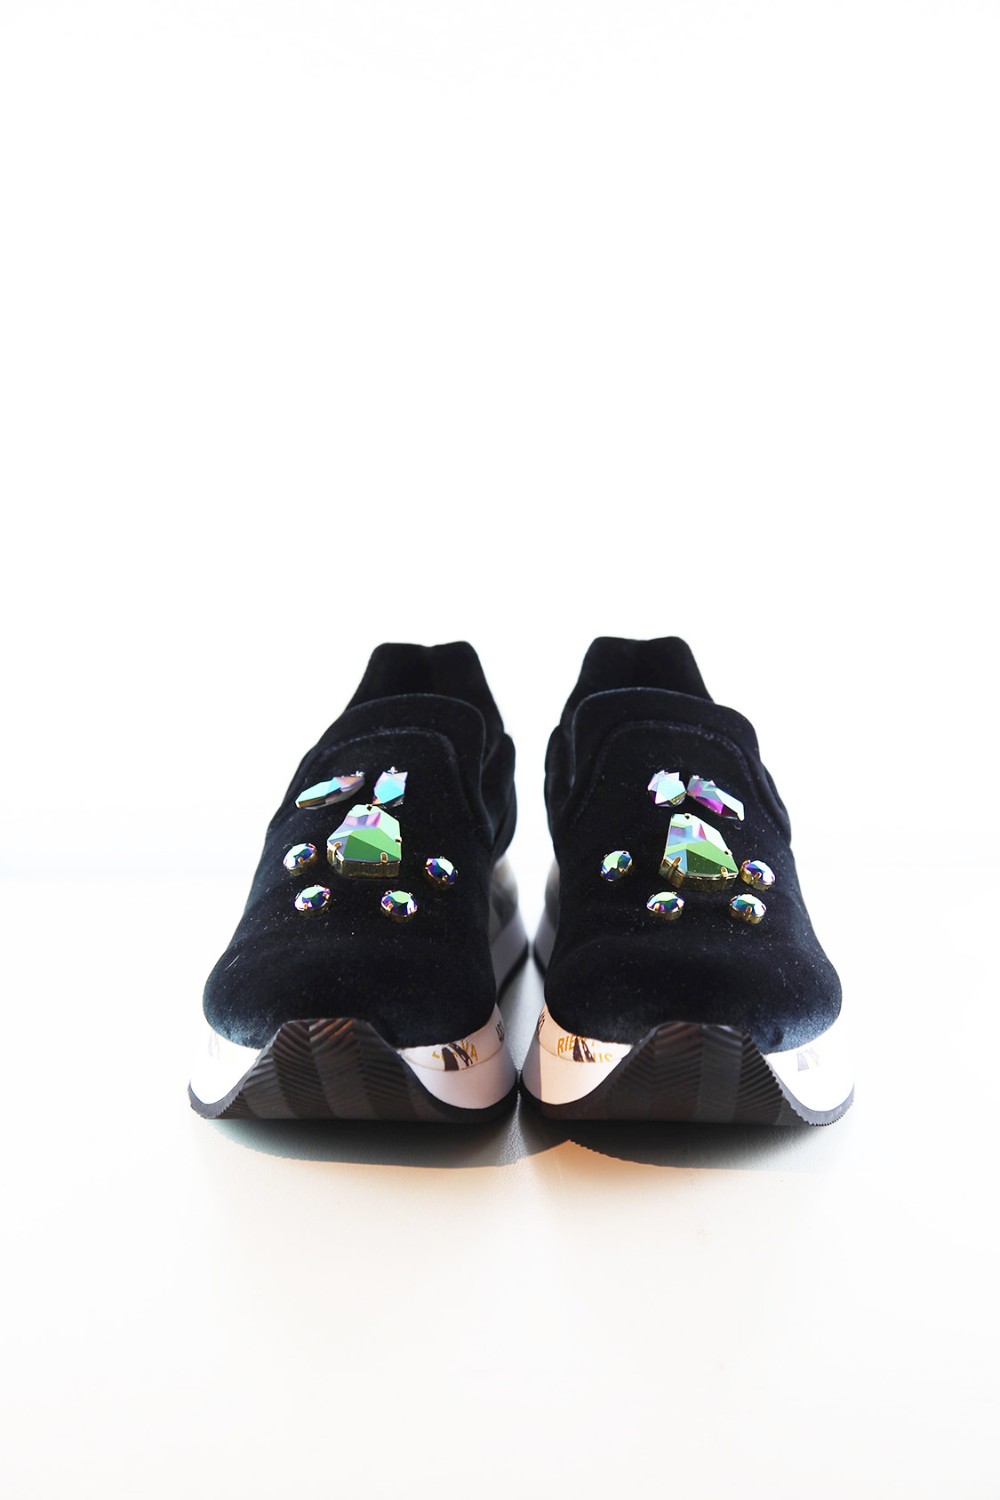 shop Premiata White Saldi Scarpe: Sneakers Takai Premiata White mocassino, in velluto con pietre iridescenti. Zeppa di 3 cm. number 752